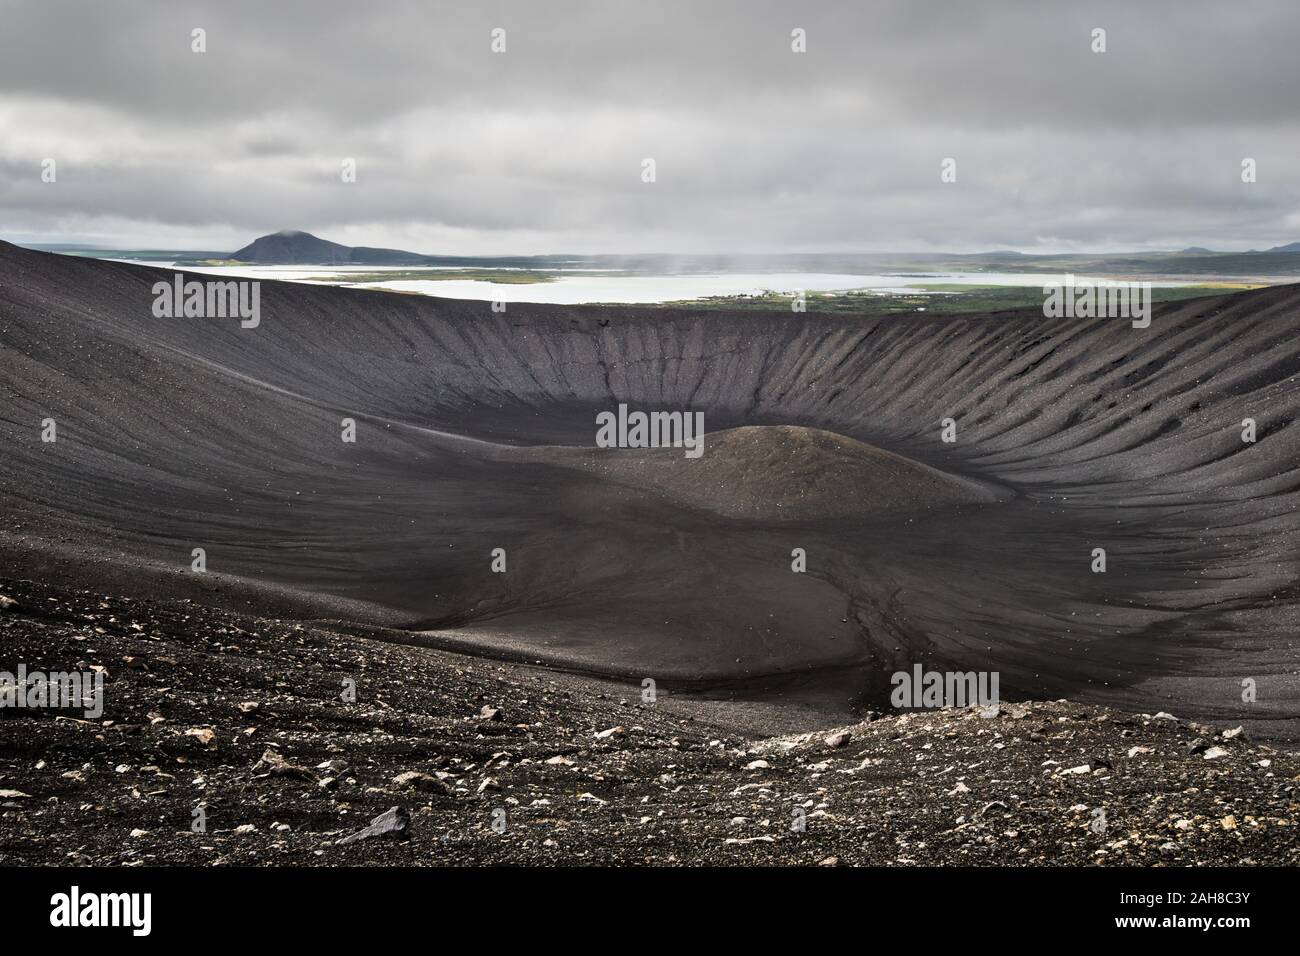 Weitwinkelansicht des Kraters eines isländischen Vulkans, unter einem dunklen bewölkten Himmel Stockfoto